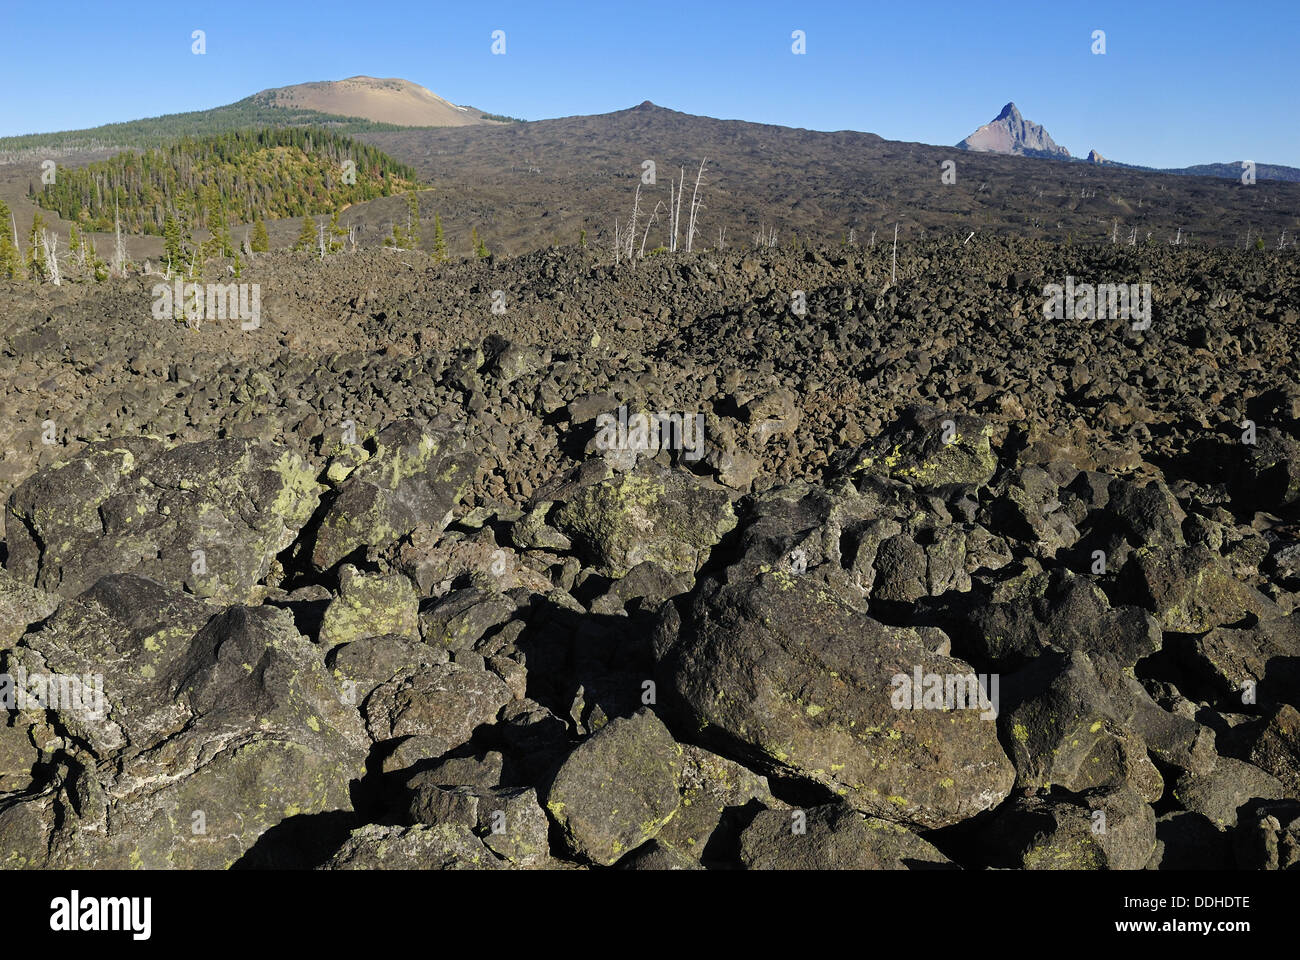 Paisaje de lava con volcán Mount Washington y Belknap cráter, McKenzie Pass, Cascade Range, Oregón, EE.UU. Foto de stock